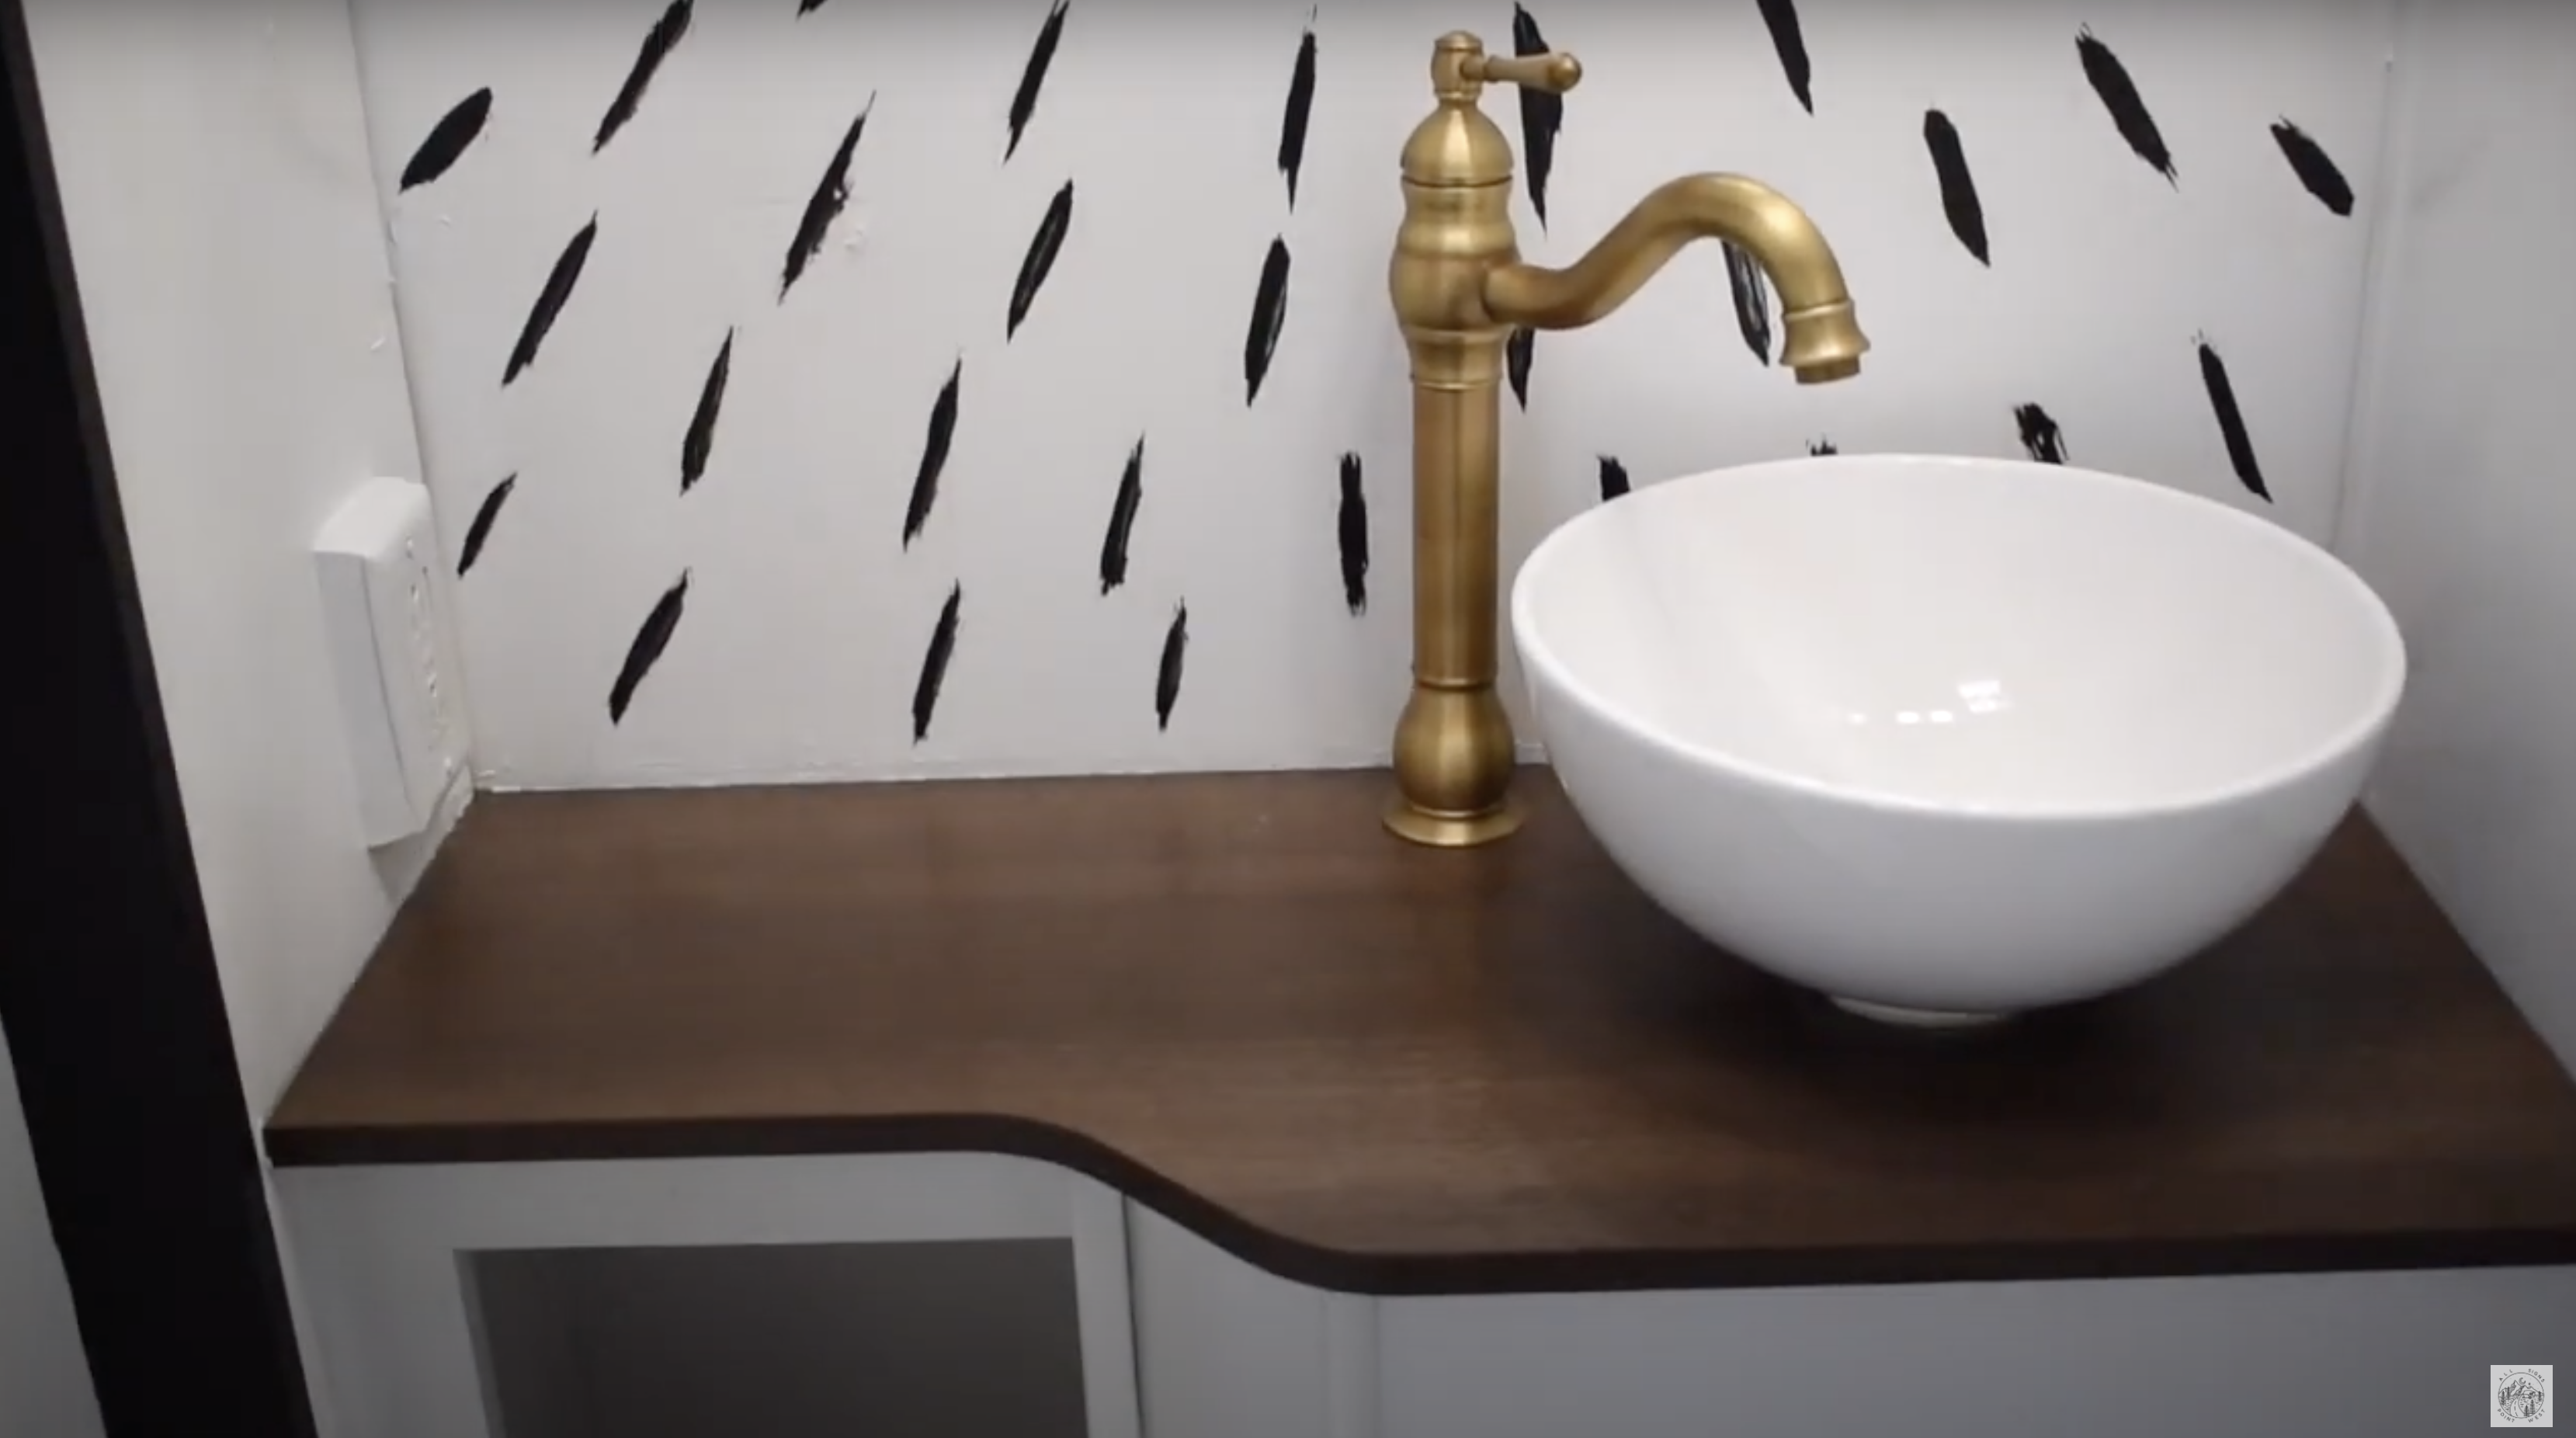 RV bathroom sink and vanity